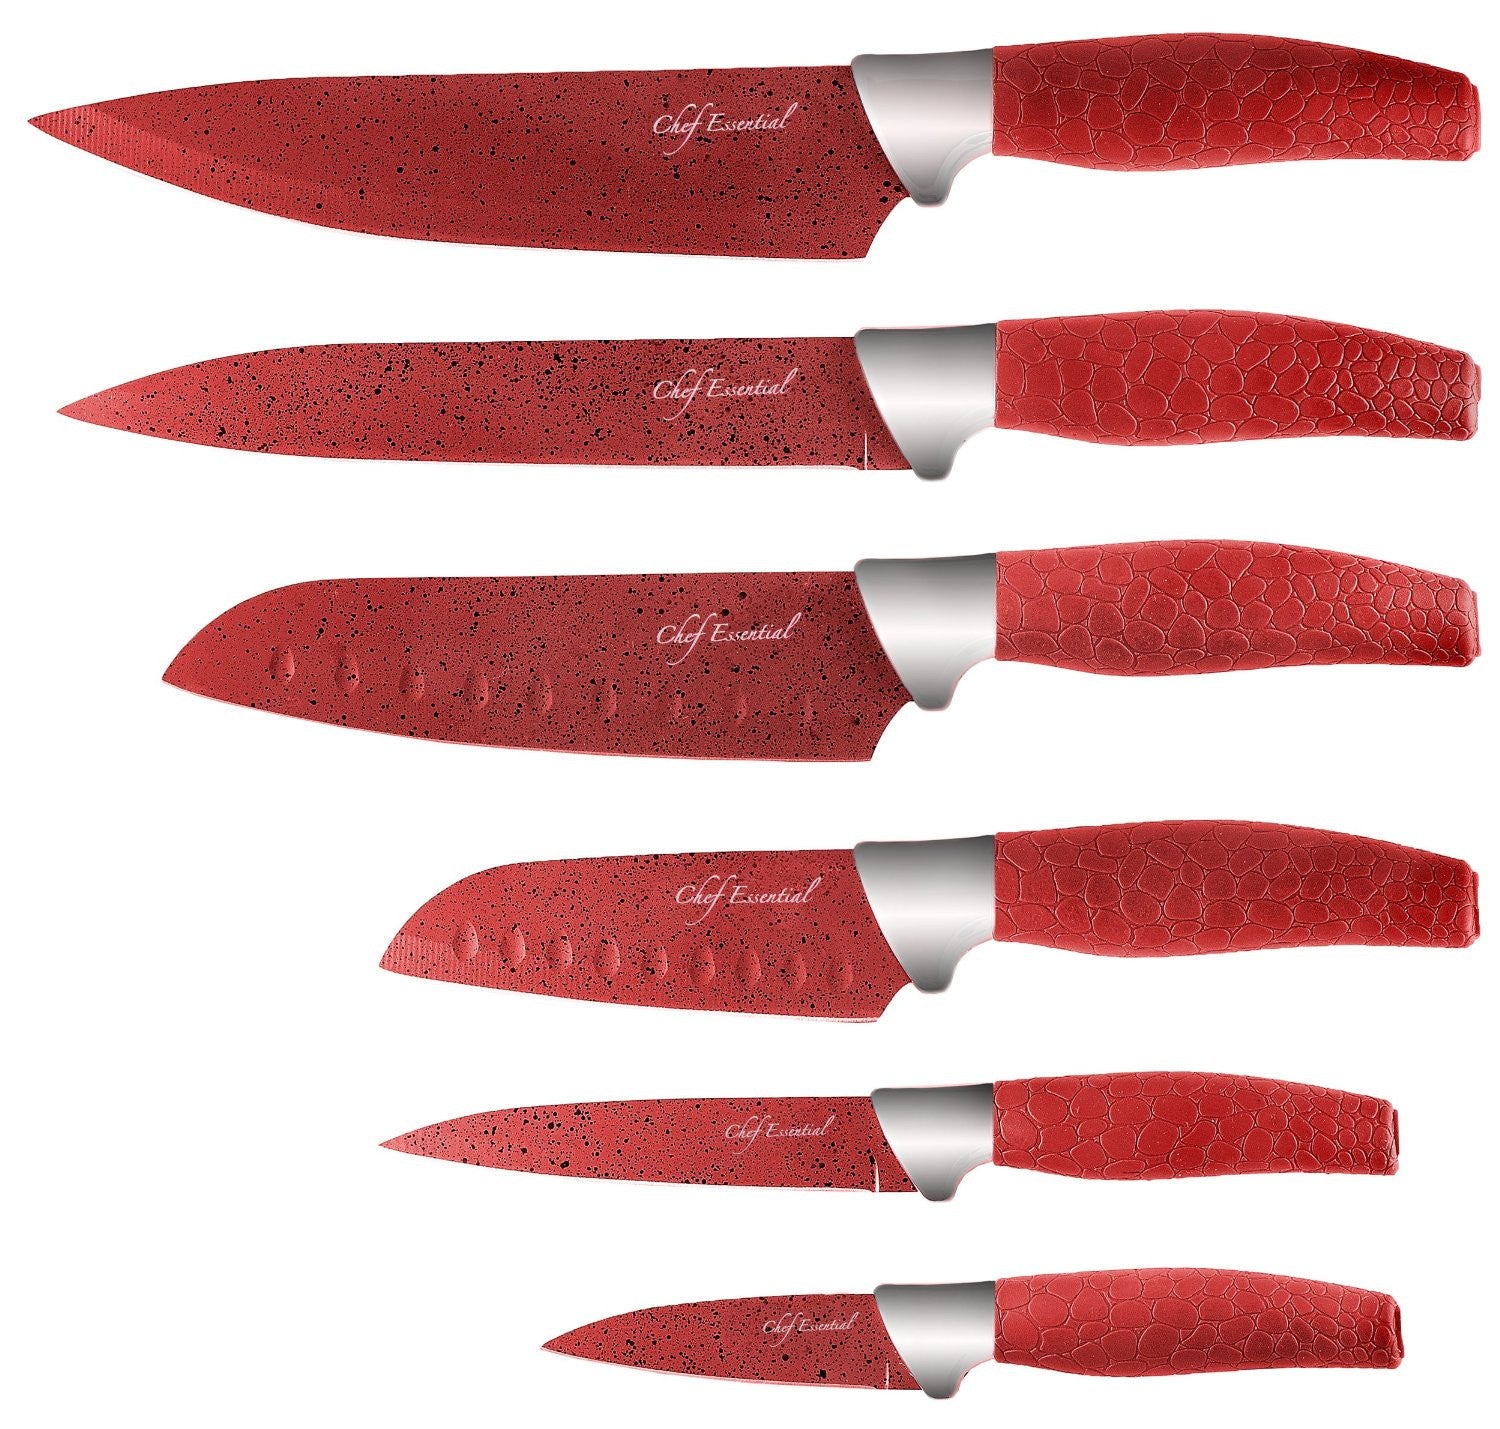 6 pcs cheap kitchen knife set